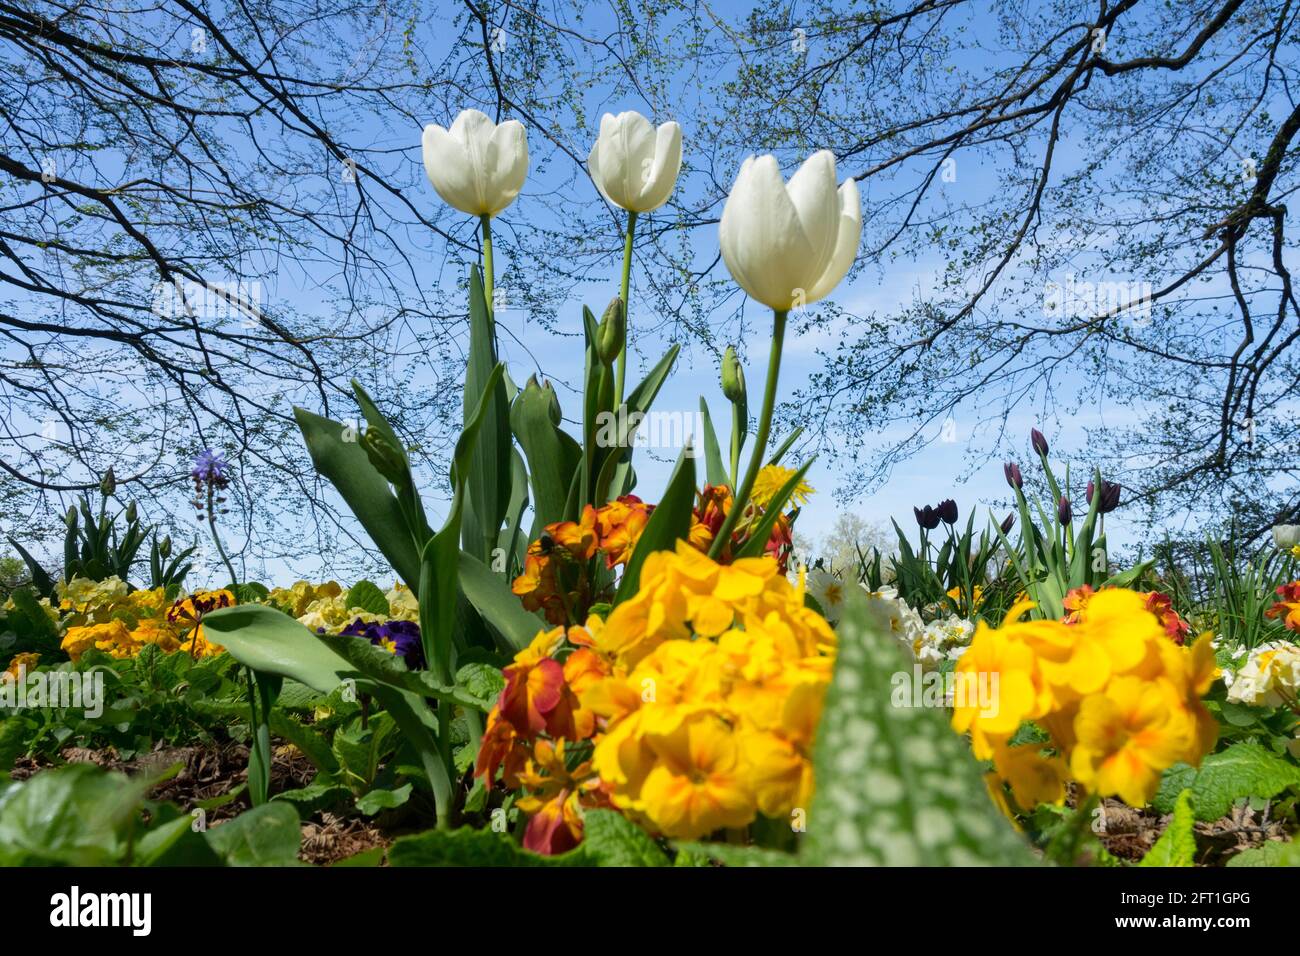 Drei weiße Tulpen im Blumenbeet Garten Frühlingsblumen, Himmel Garten Tulpen Frühling schönes Wetter im Mai Stockfoto